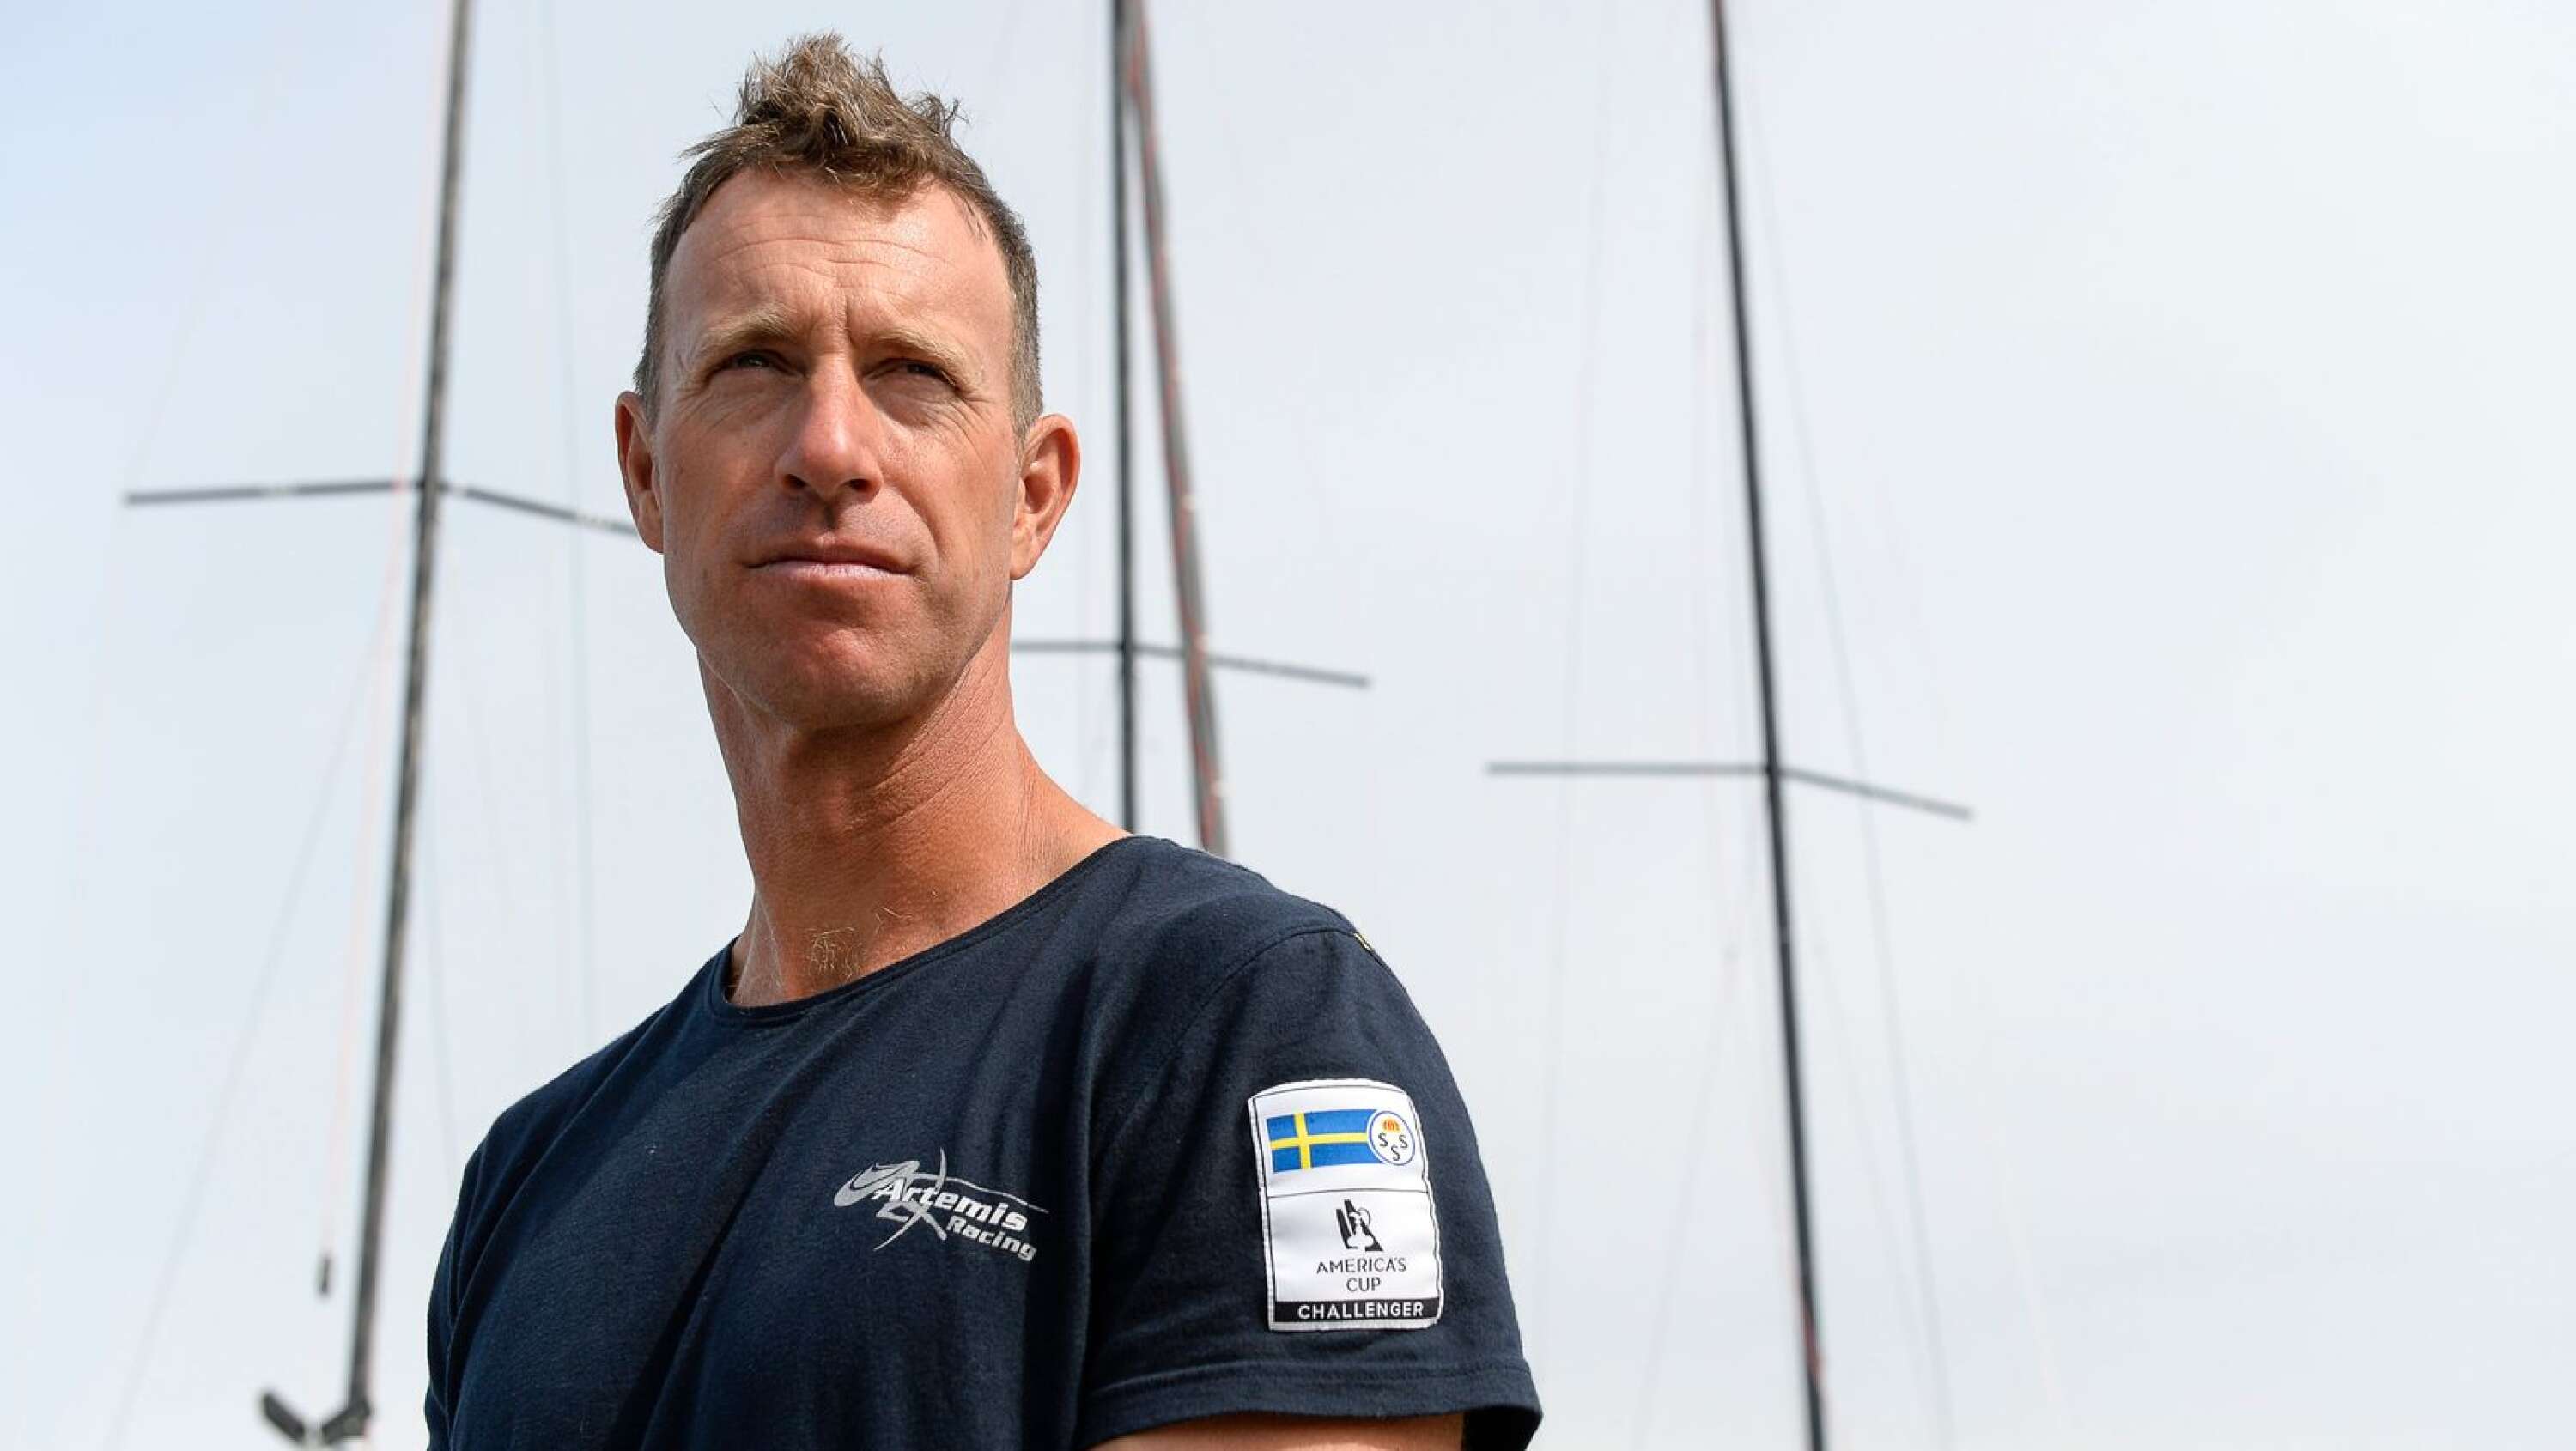 Den välmeriterade seglaren Fredrik Lööf har tagit ännu en mästerskapsmedalj.